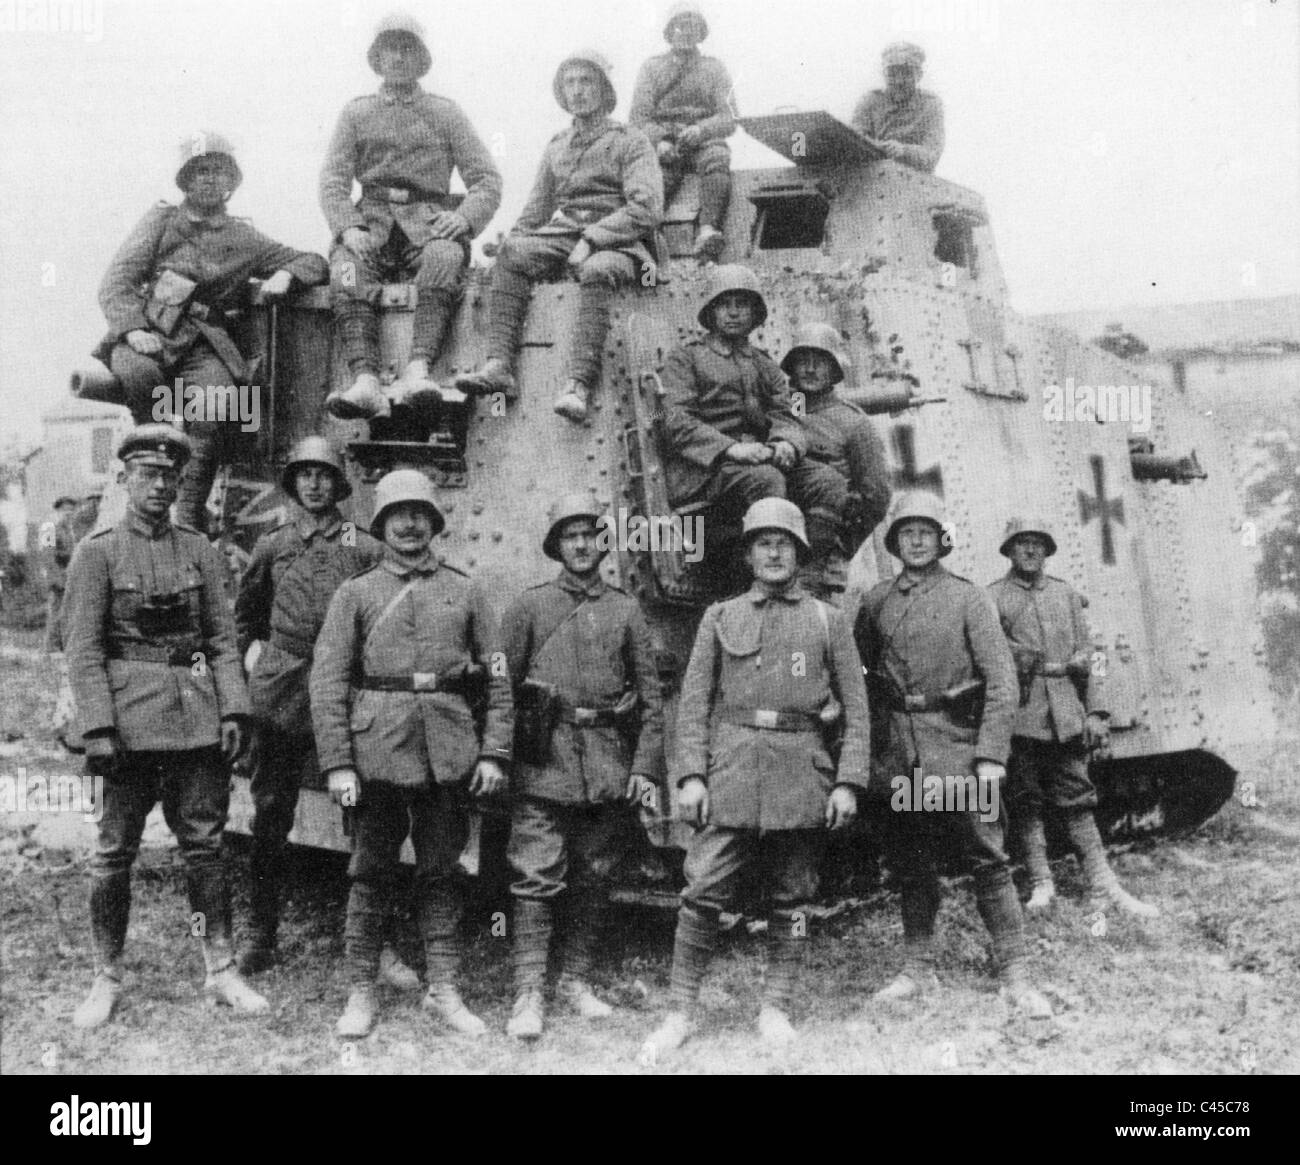 Первая а четвертая т. A7v танк экипаж. Танкисты первой мировой войны 1914-1918. Первый немецкий танк a7v. A7v 1918.